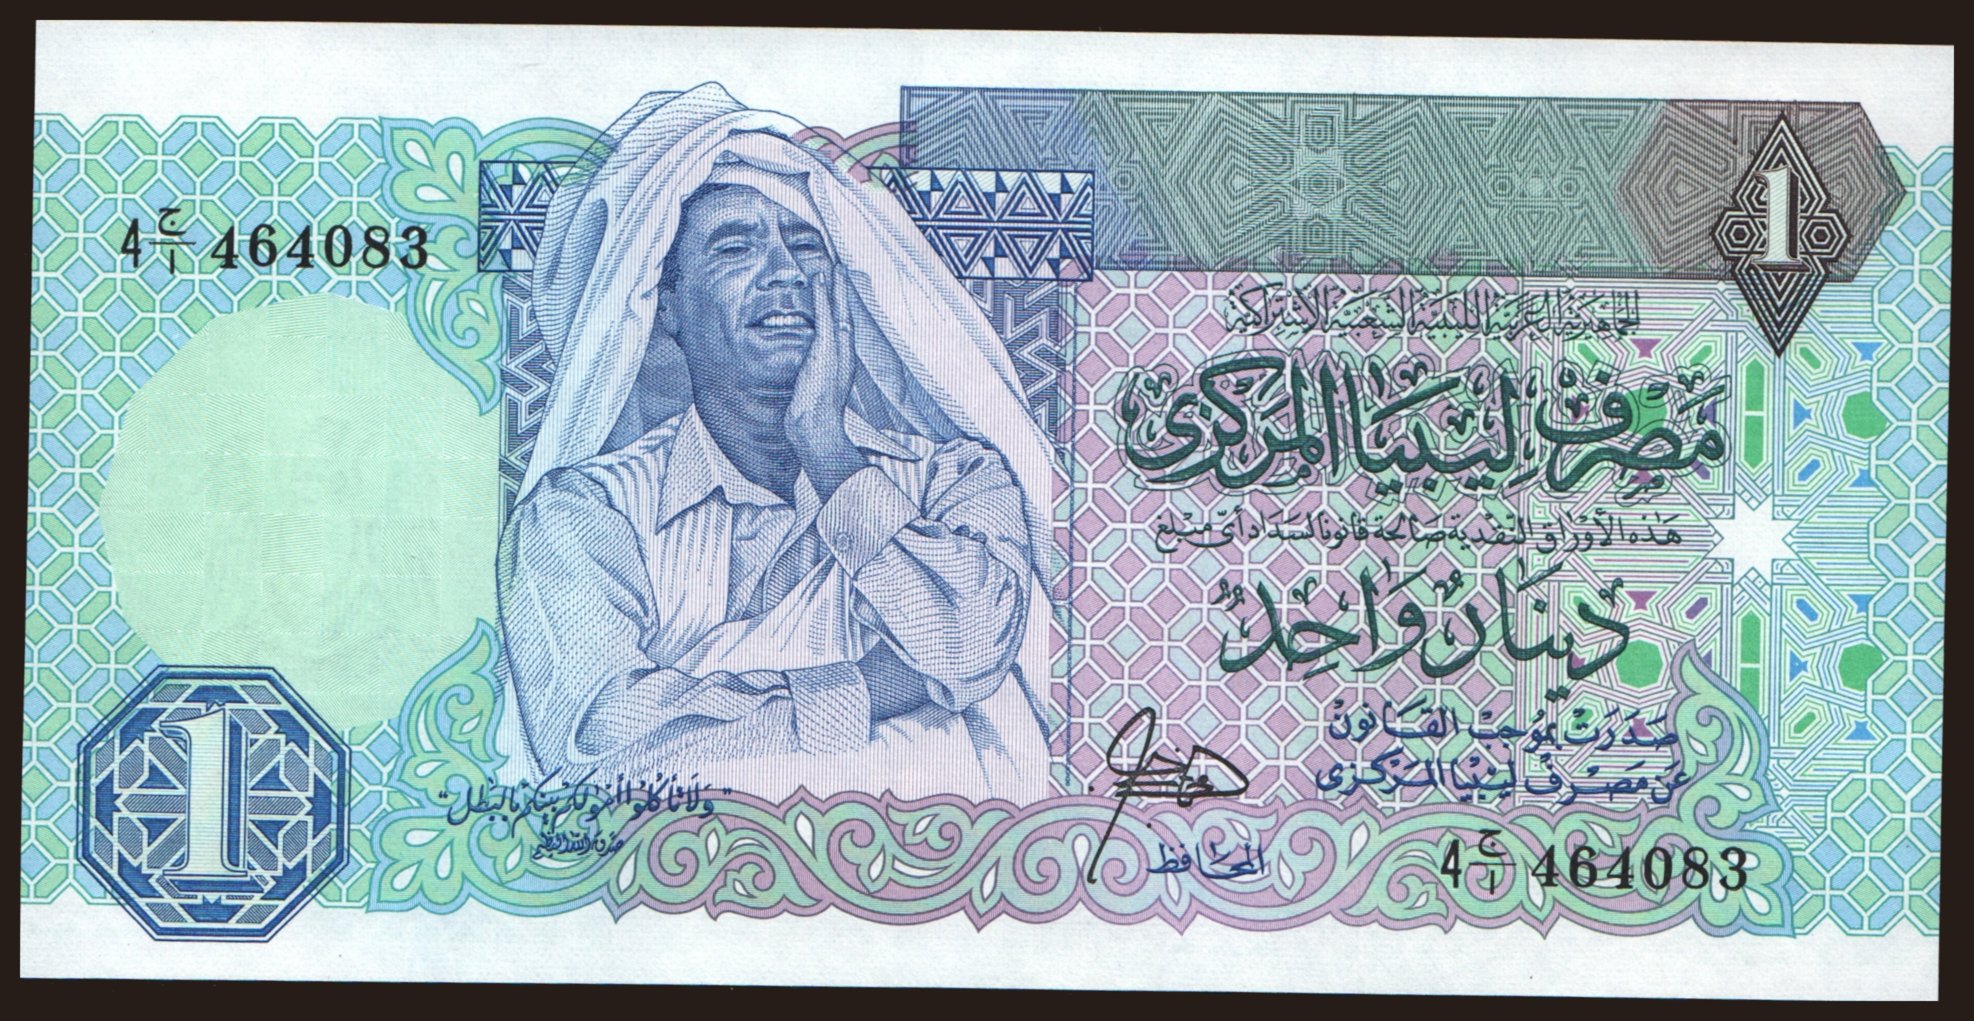 1 dinar, 1988